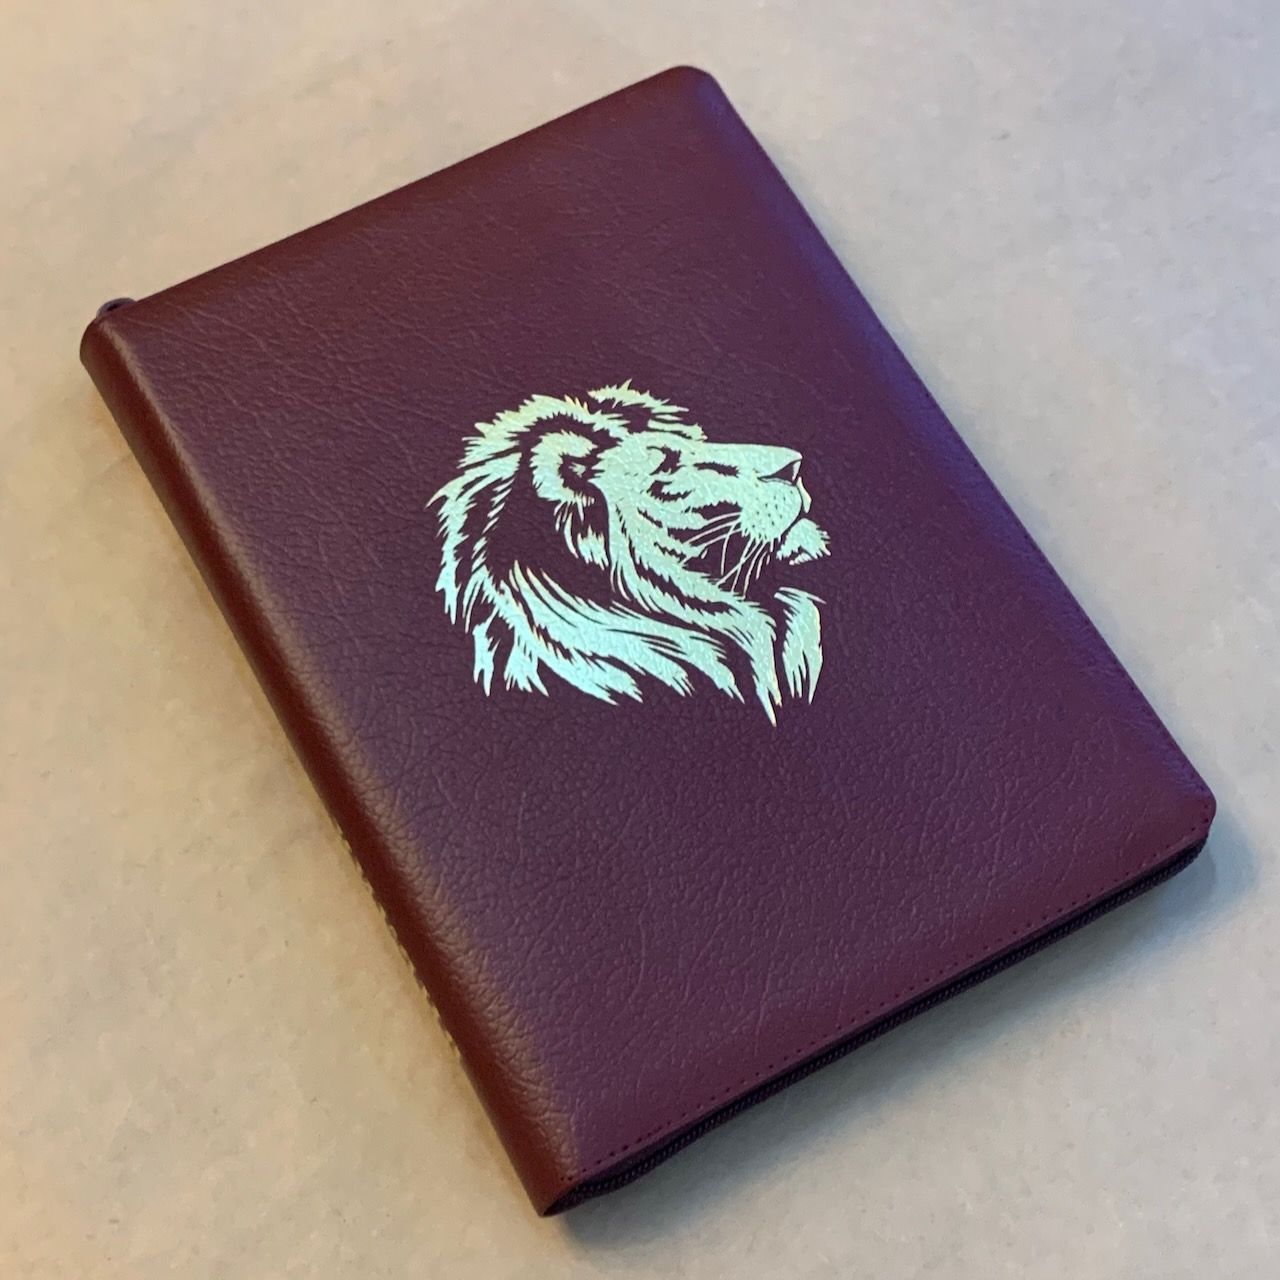 Библия 076zti код C8,  дизайн золотой лев, кожаный переплет на молнии с индексами, цвет бордо пятнистый, размер 180x243 мм